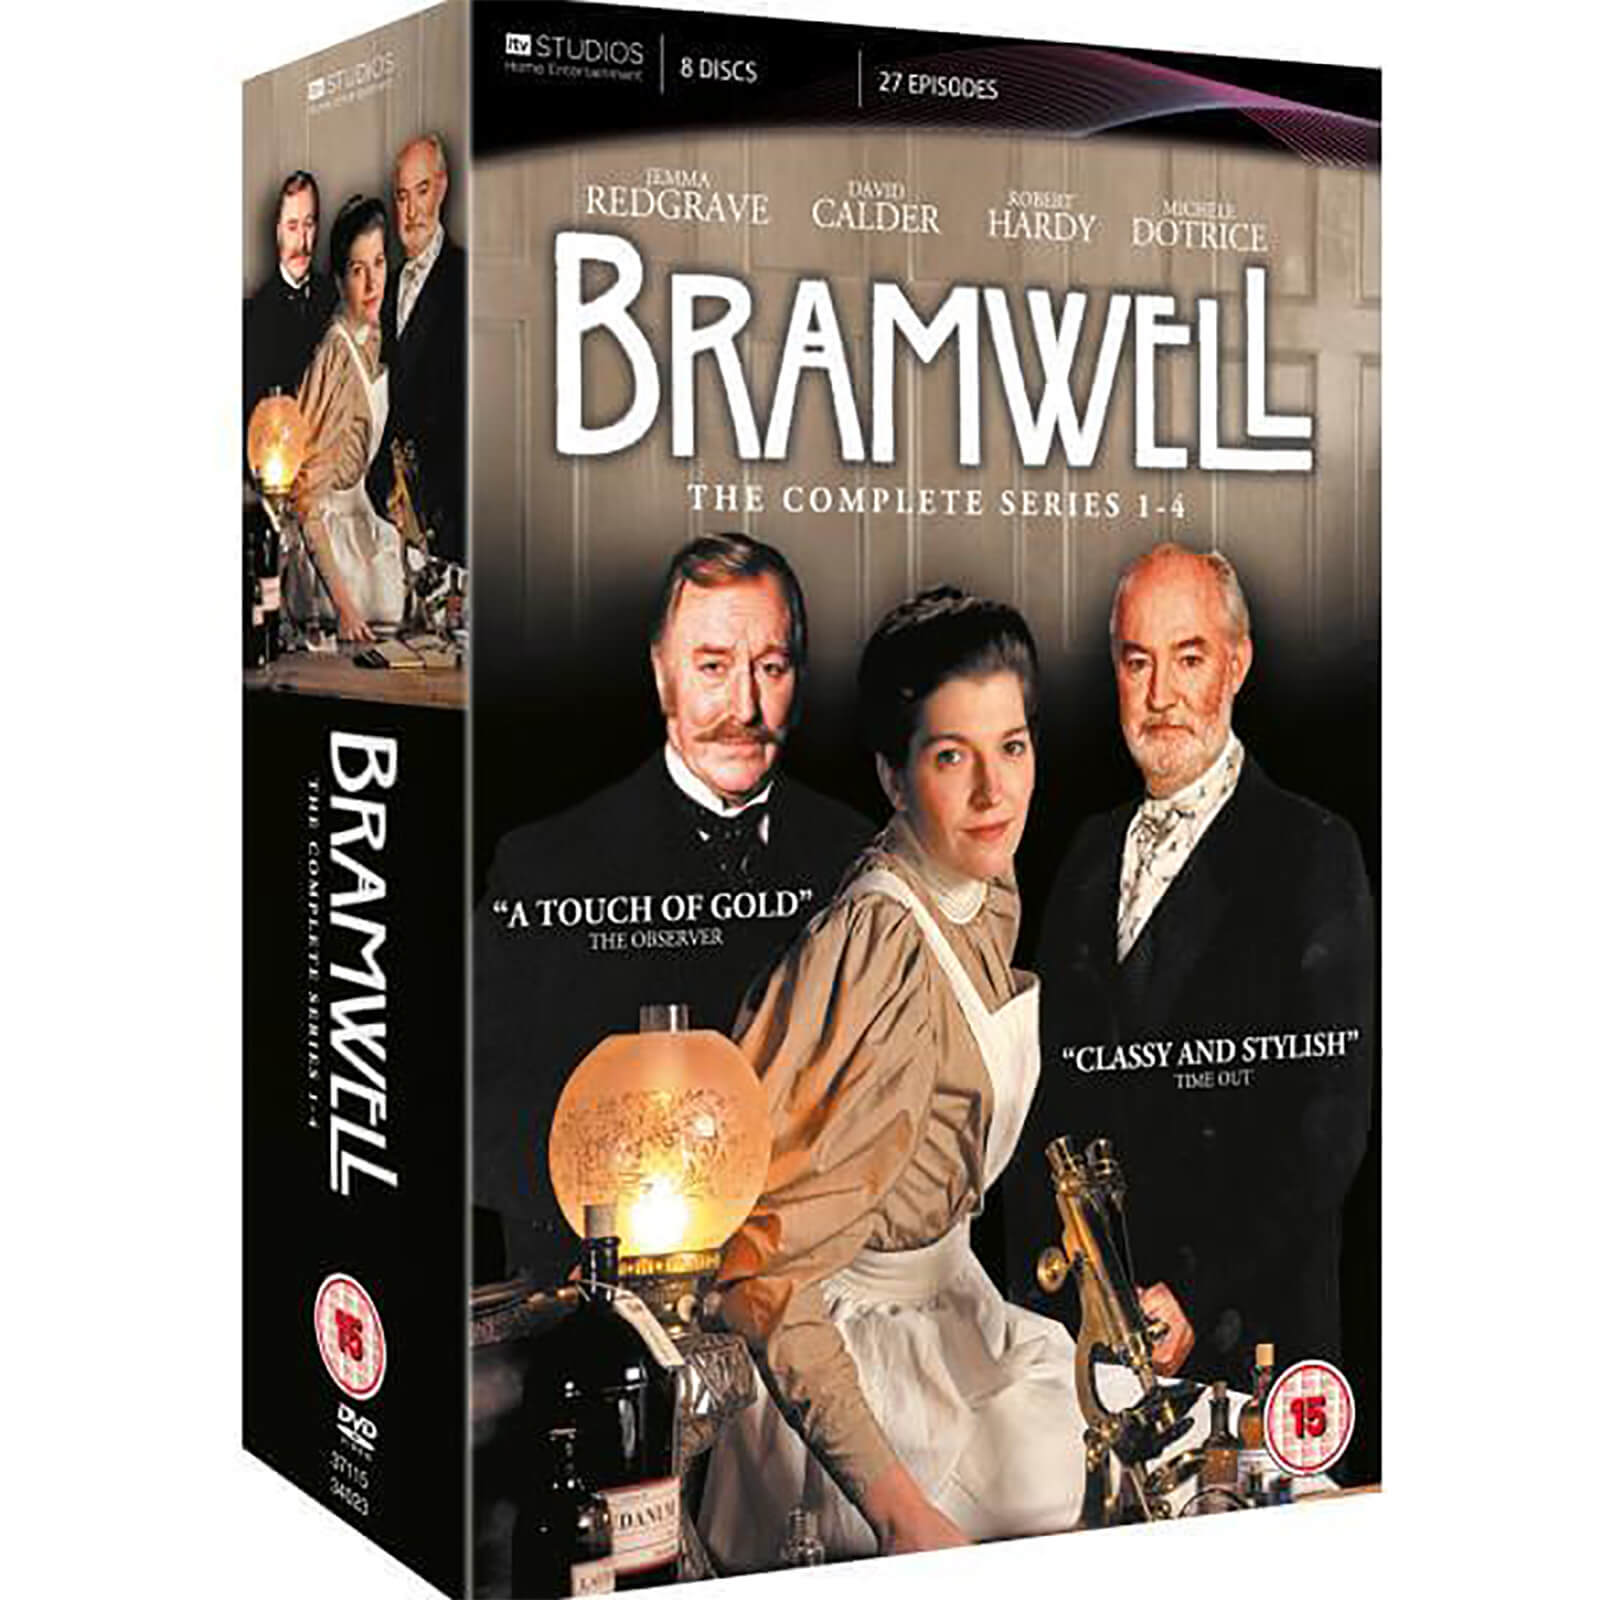 Bramwell vollständig von ITV Home Entertainment